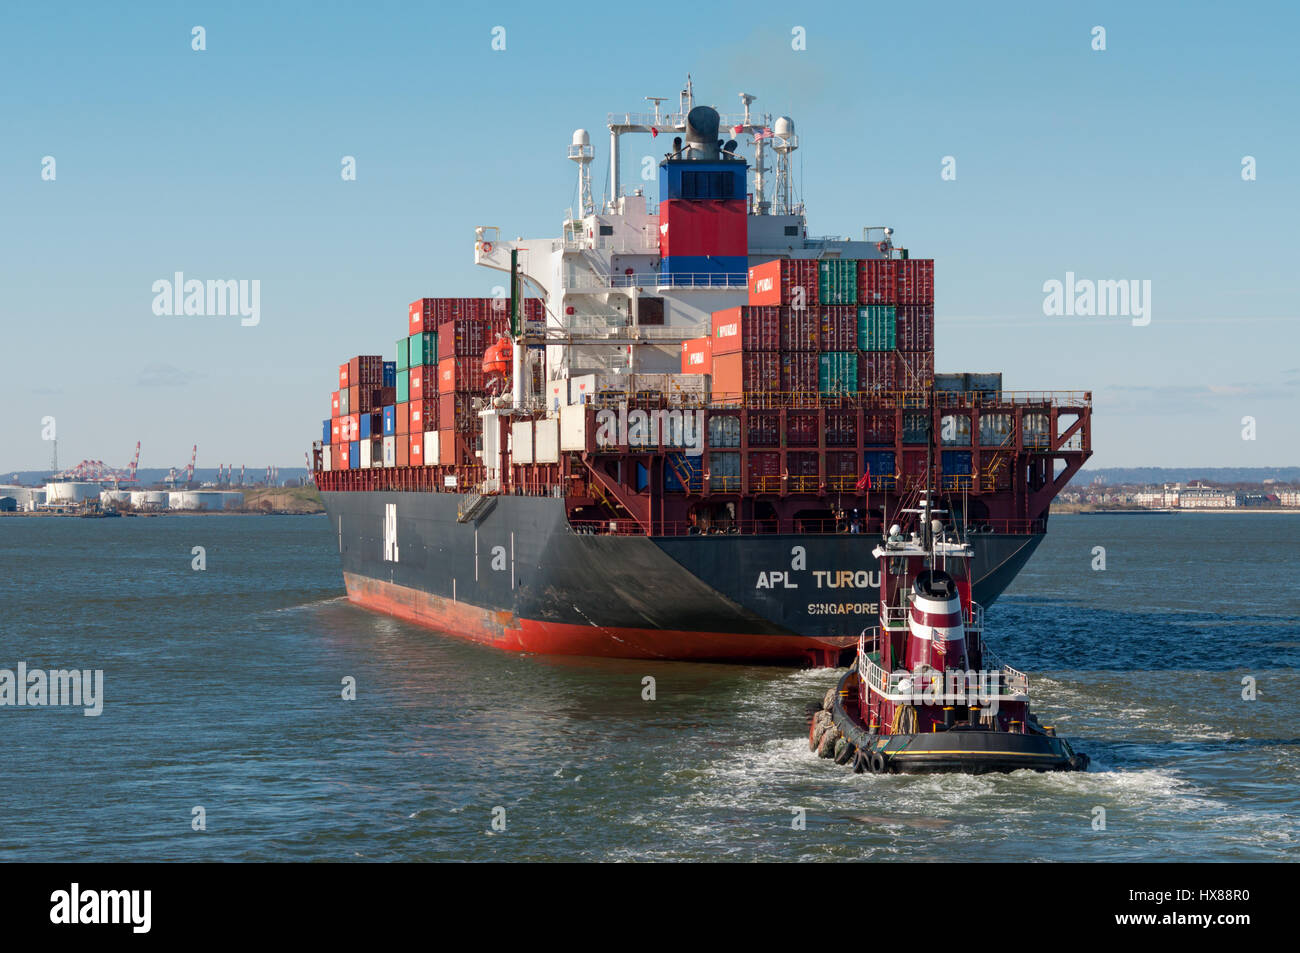 La città di New York, Stati Uniti d'America - 18 Novembre 2011: nave portacontainer APL turchese con un rimorchiatore di accompagnamento nel porto di New York a Novembre 18, 2011, Stati Uniti Foto Stock